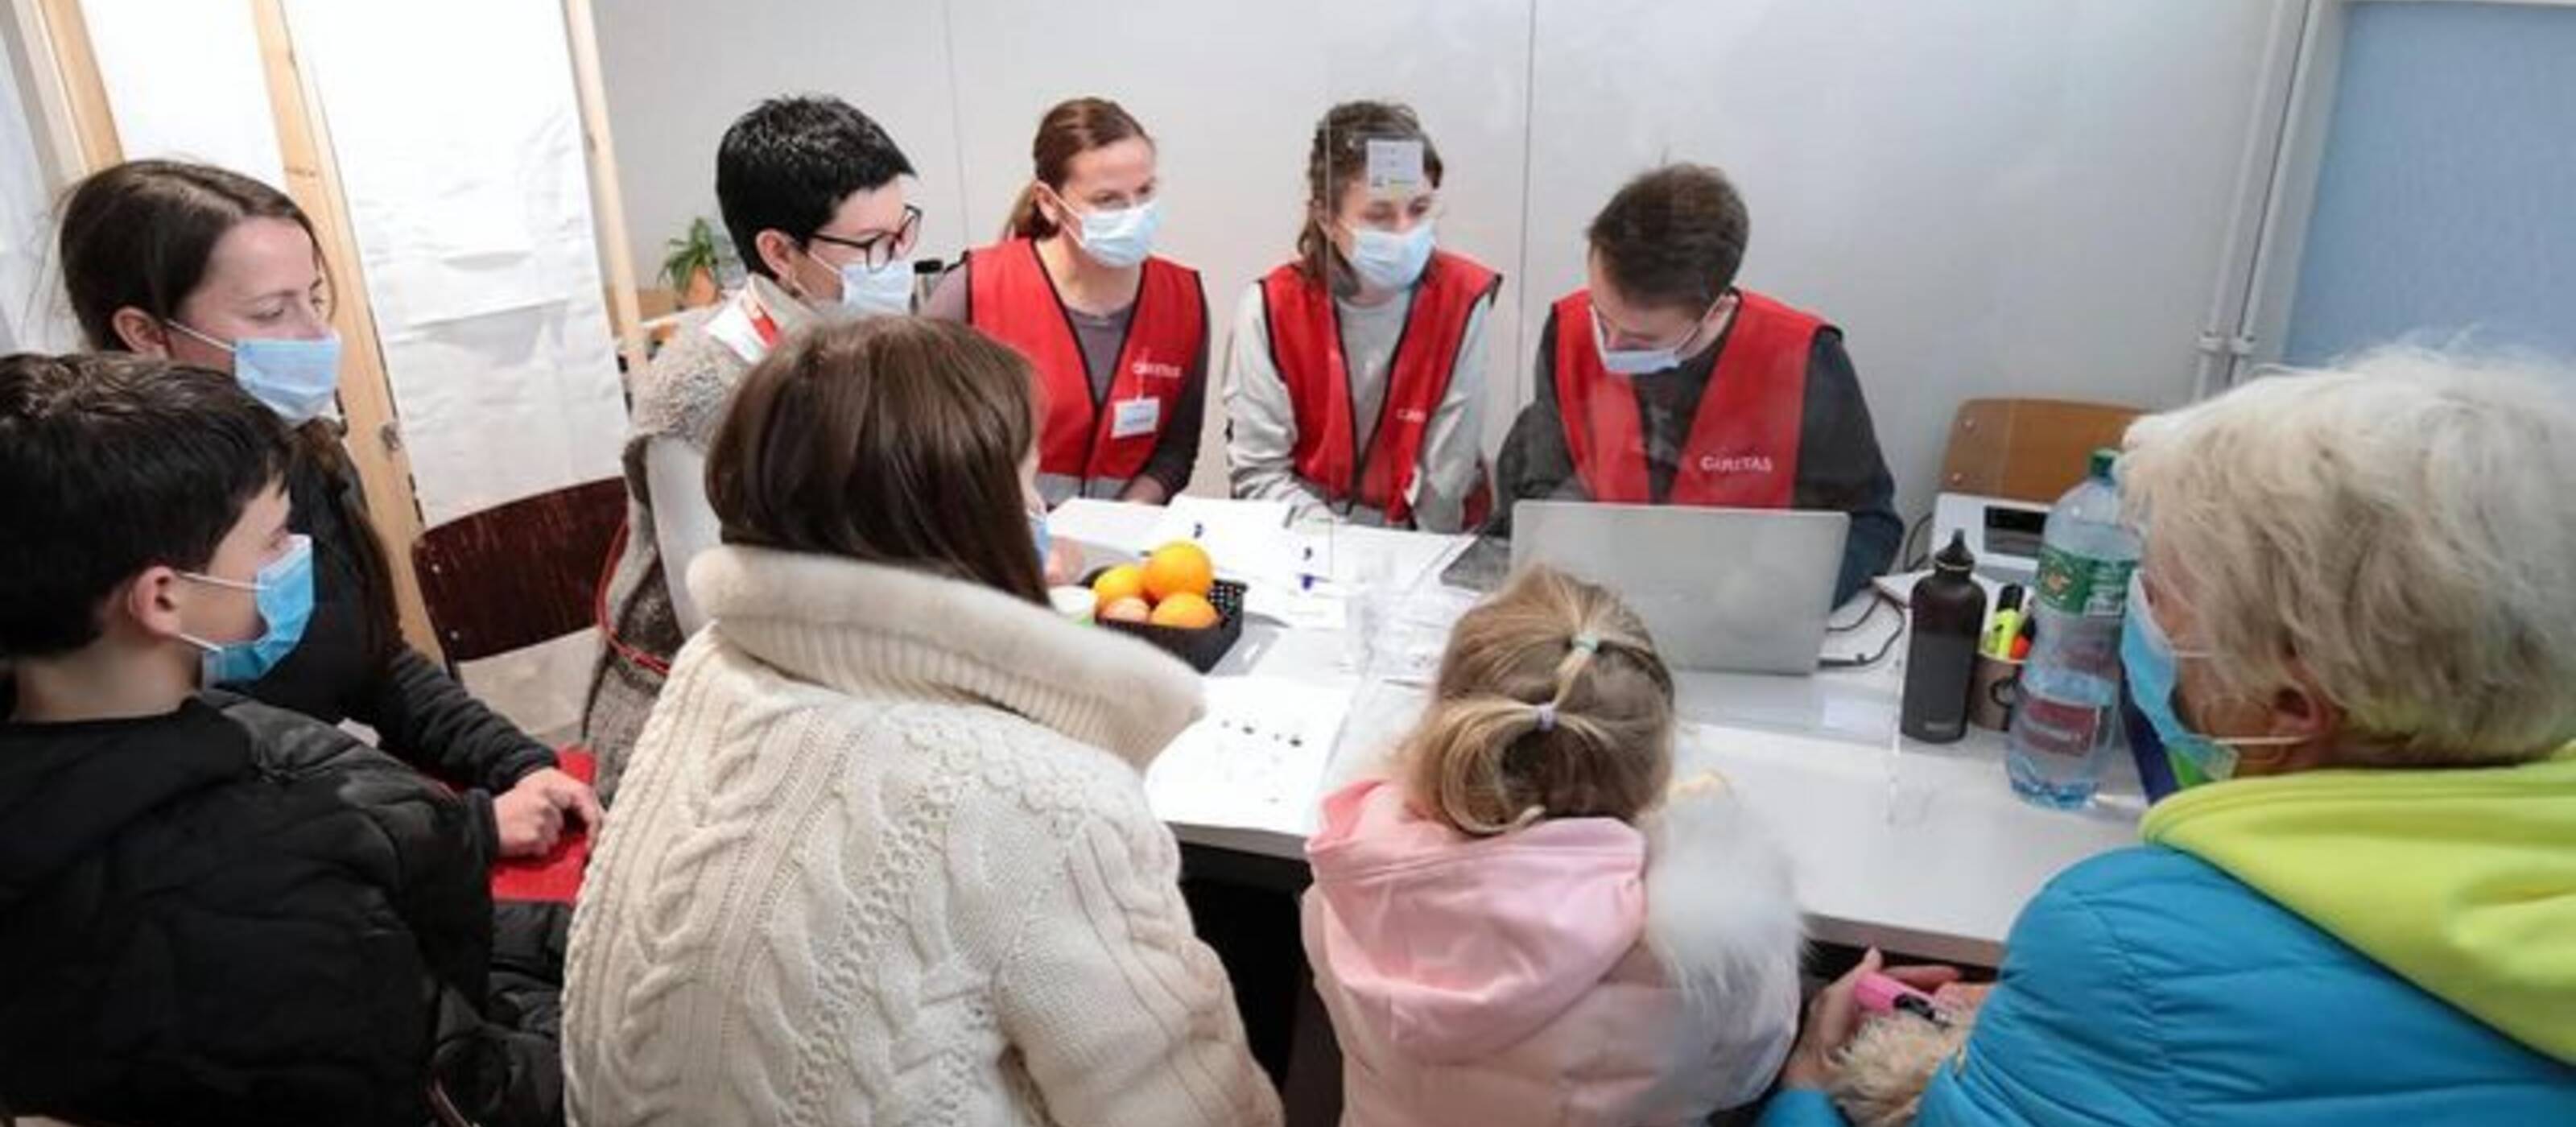 Mitarbeitende der Caritas Schweiz registrieren im Bundeszentrum Boudry eine Gruppe von ukrainischen Flüchtlingen, die den Schutzstatus S beantragen.